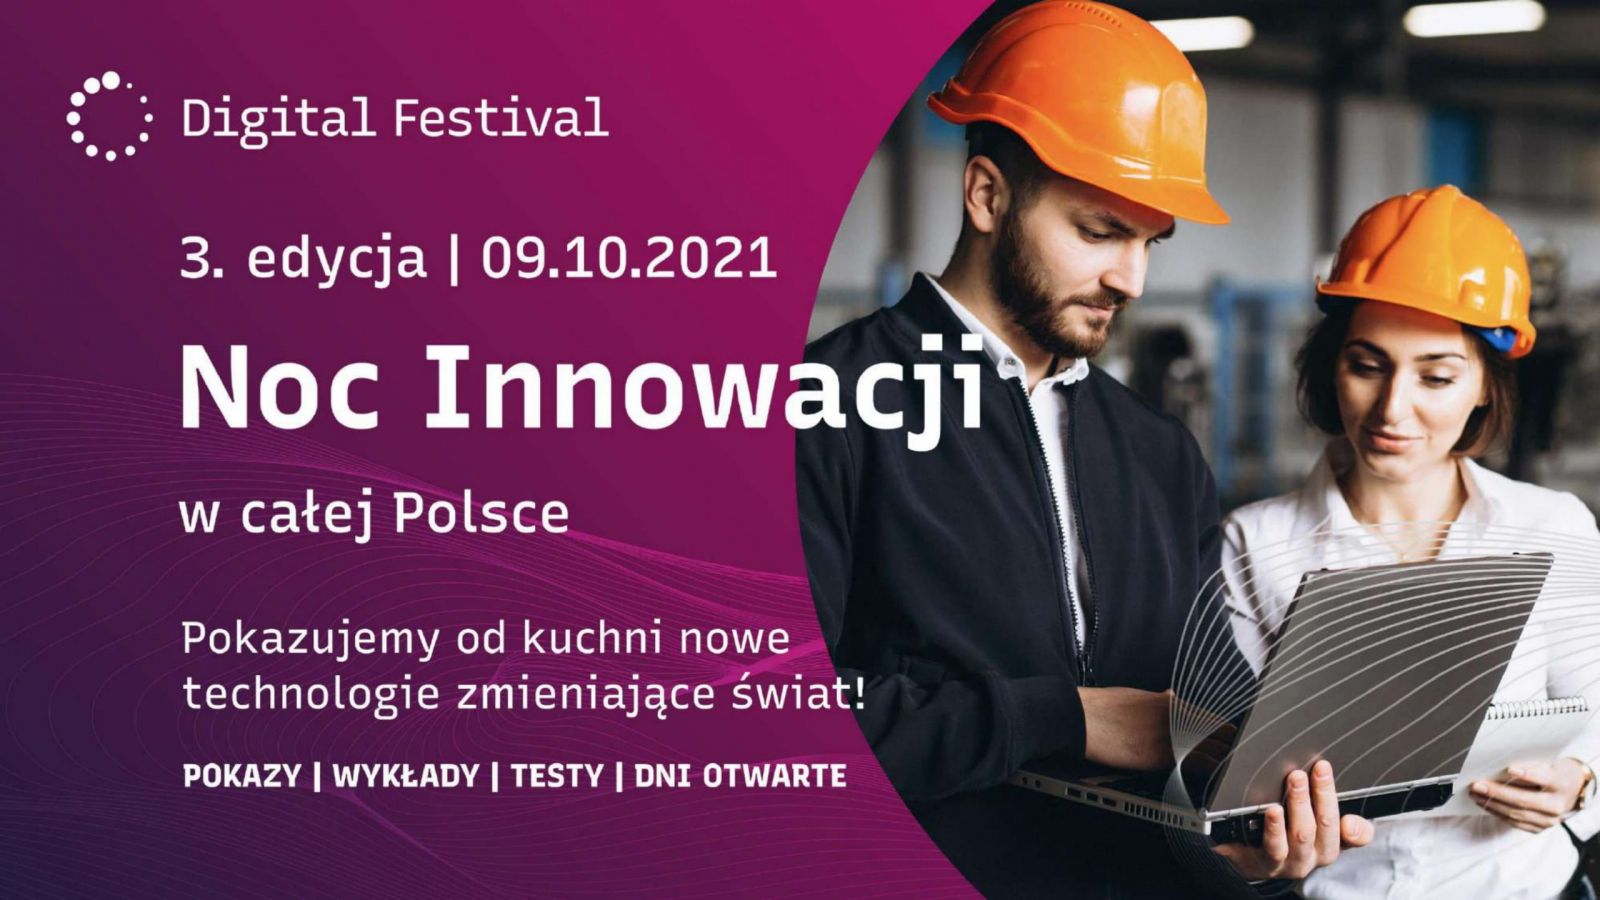 Plakat Nocy innowacji. Na fioletowym tle widać napis: Digital Festiwal, 3 edycja 9.10.2021, Noc innowacji w całej Polsce. Pokazujemy od kuchni nowe technologie zmieniające świat! Pokazy, wykłady, testy, dni otwarte.